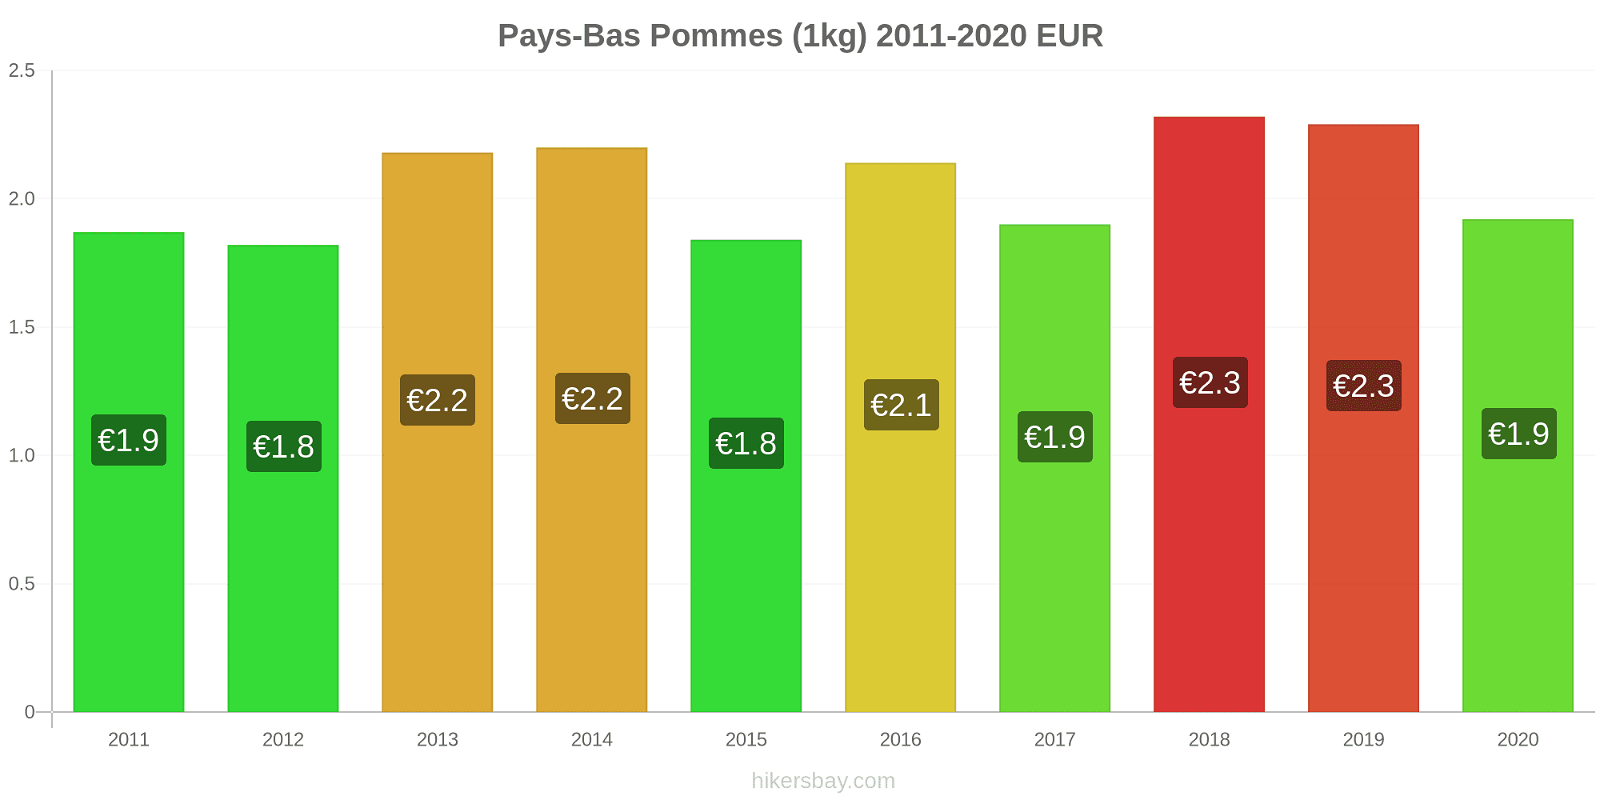 Pays-Bas changements de prix Pommes (1kg) hikersbay.com